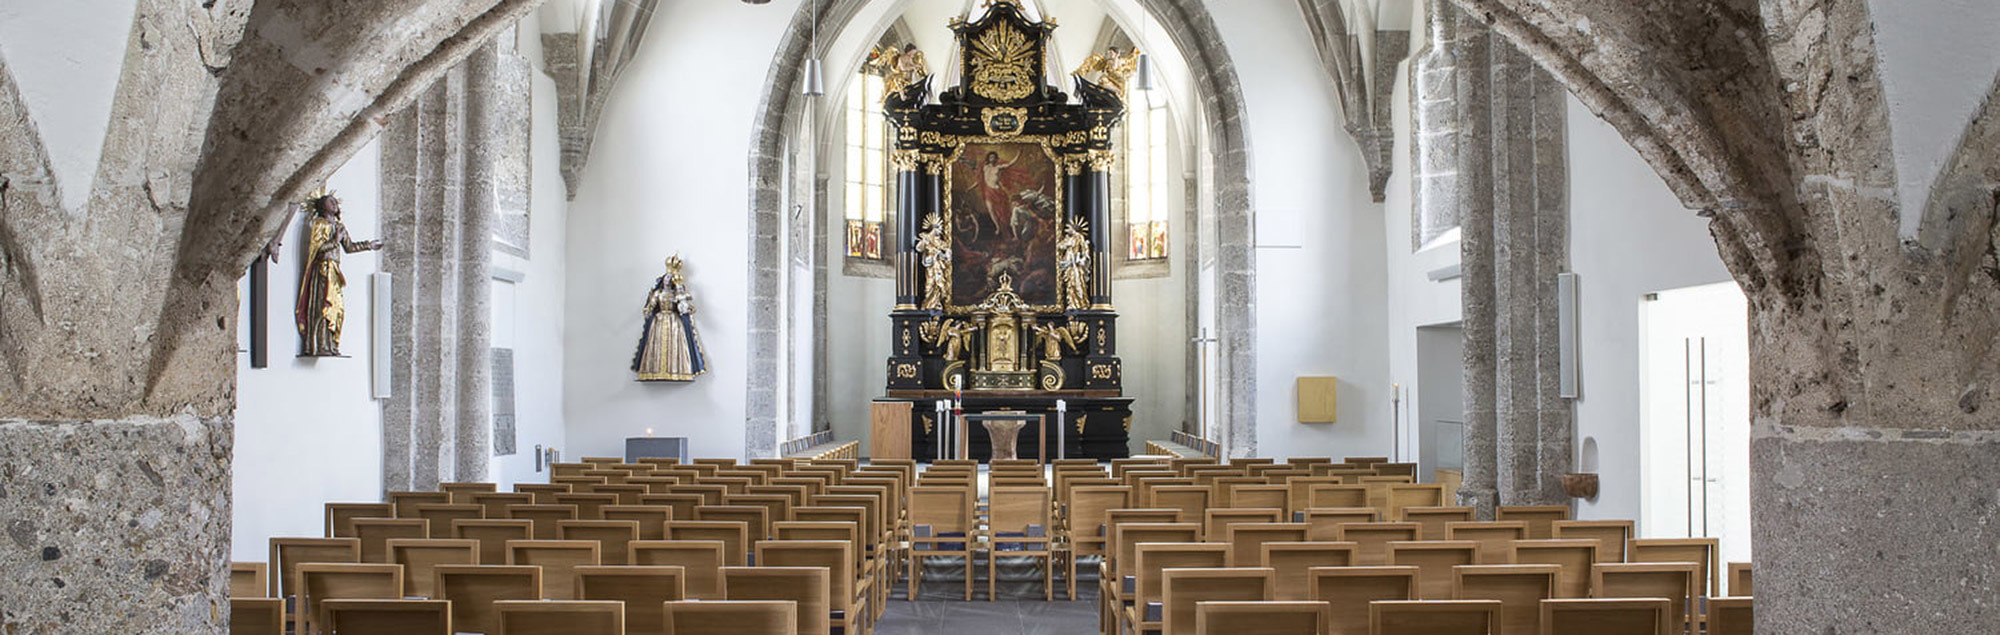 Pfarrkirche Ternberg Innenansicht